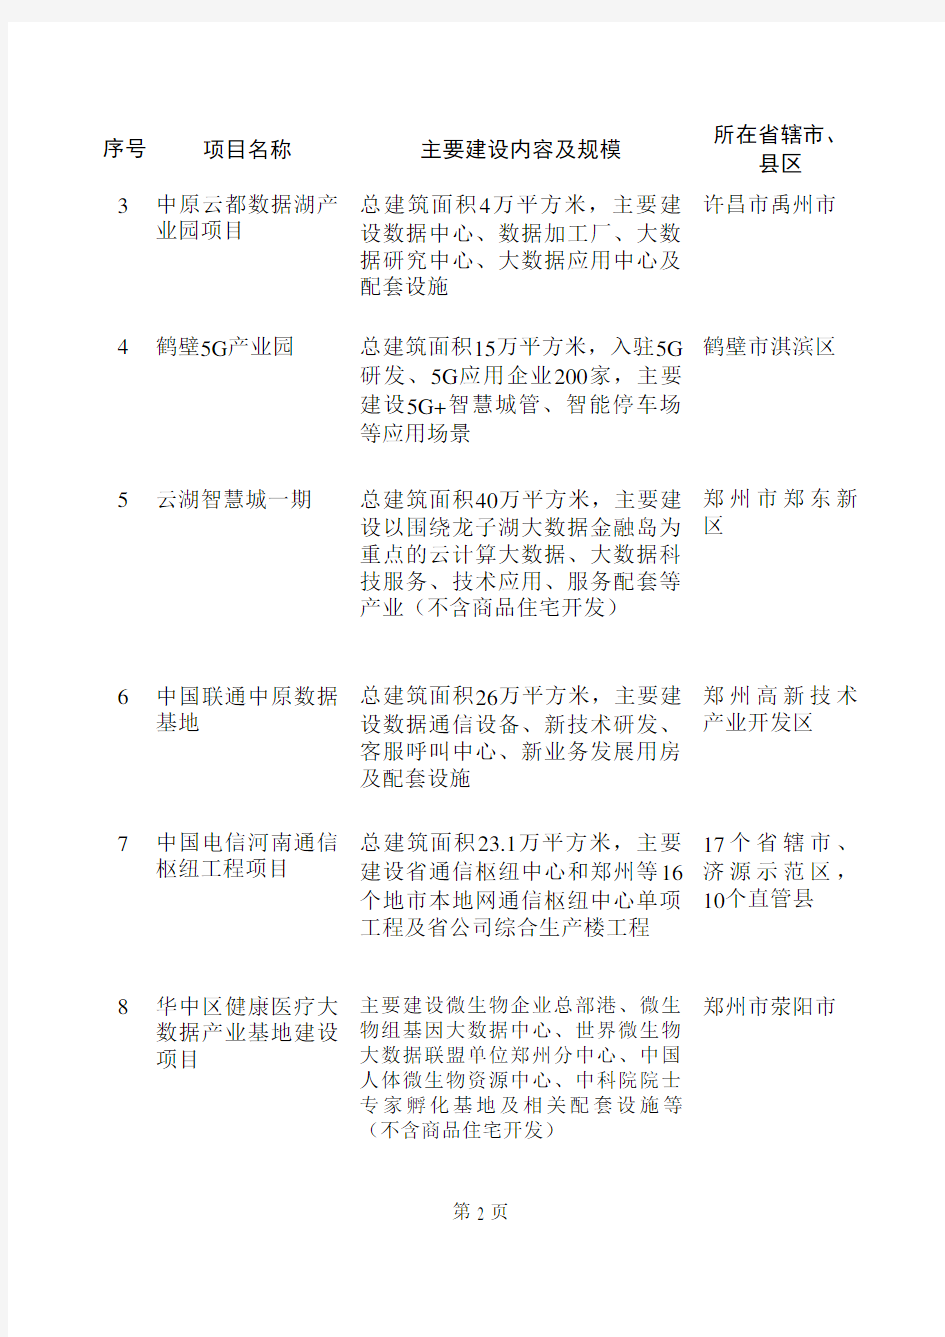 2020年河南省重点建设项目名单--豫发改重点〔2020〕76号 关于印发2020年河南省重点建设项目名单的通知